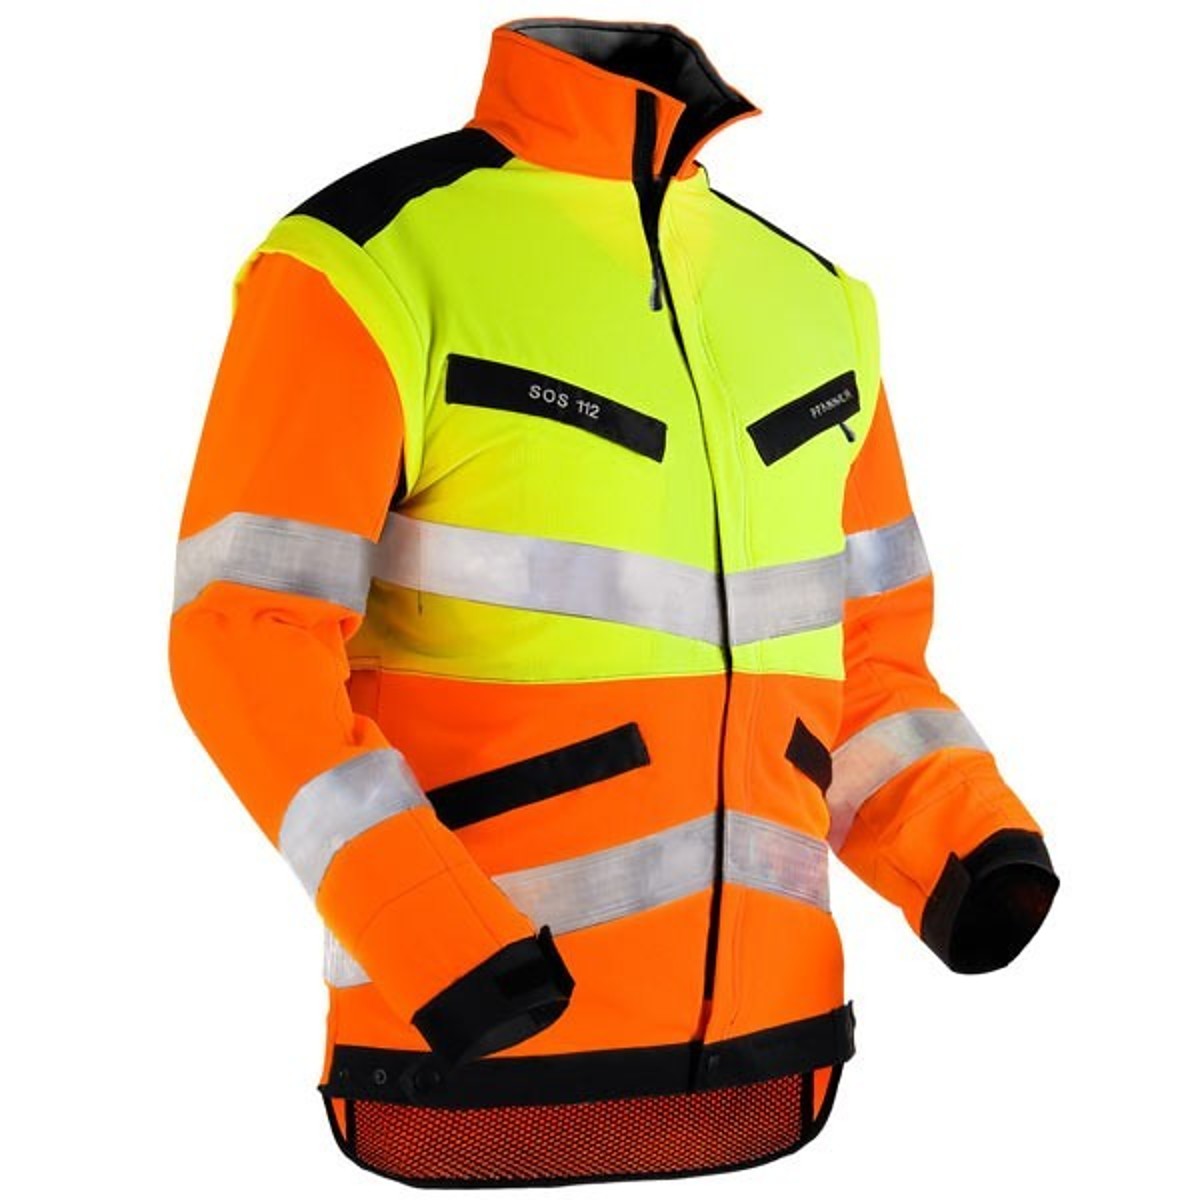 Pfanner KlimaAir® forest jacket